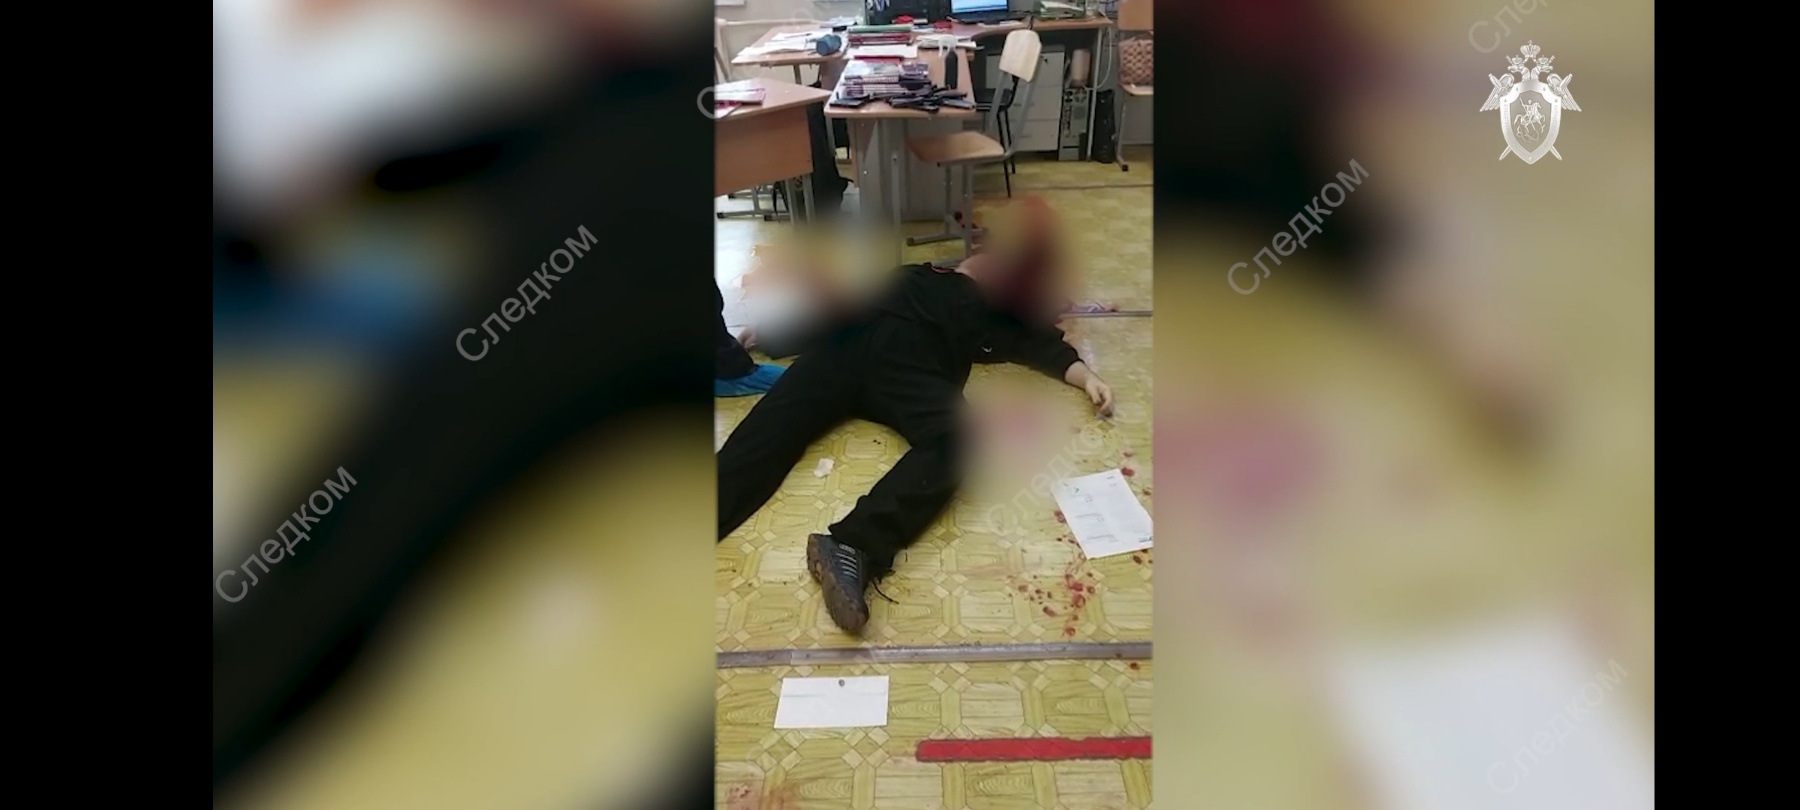 В русском Ижевске бывший ученик ворвался в школу, где застрелил 13 человек и себя. Семь погибших - дети